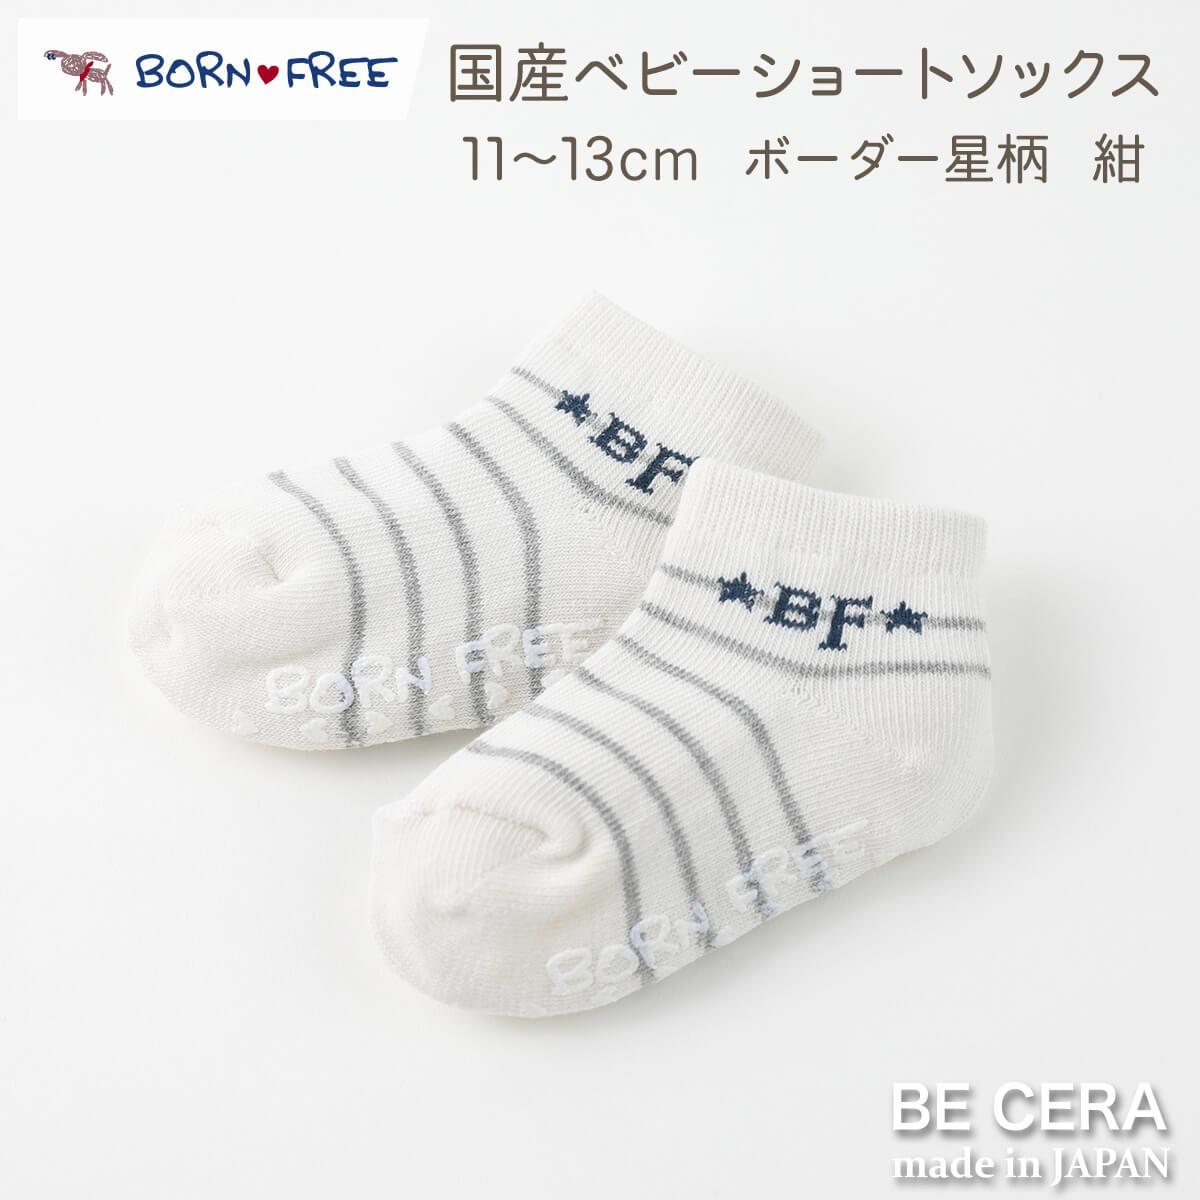 BECERA(ビセラ)：BORN FREE(ボンフリー) ・素材 綿、アクリル、ナイロン、ポリウレタン ・カラー 色 ホワイト 白 グレー コン 紺 ネイビー ・サイズ 11〜13cm ・原産国 日本製